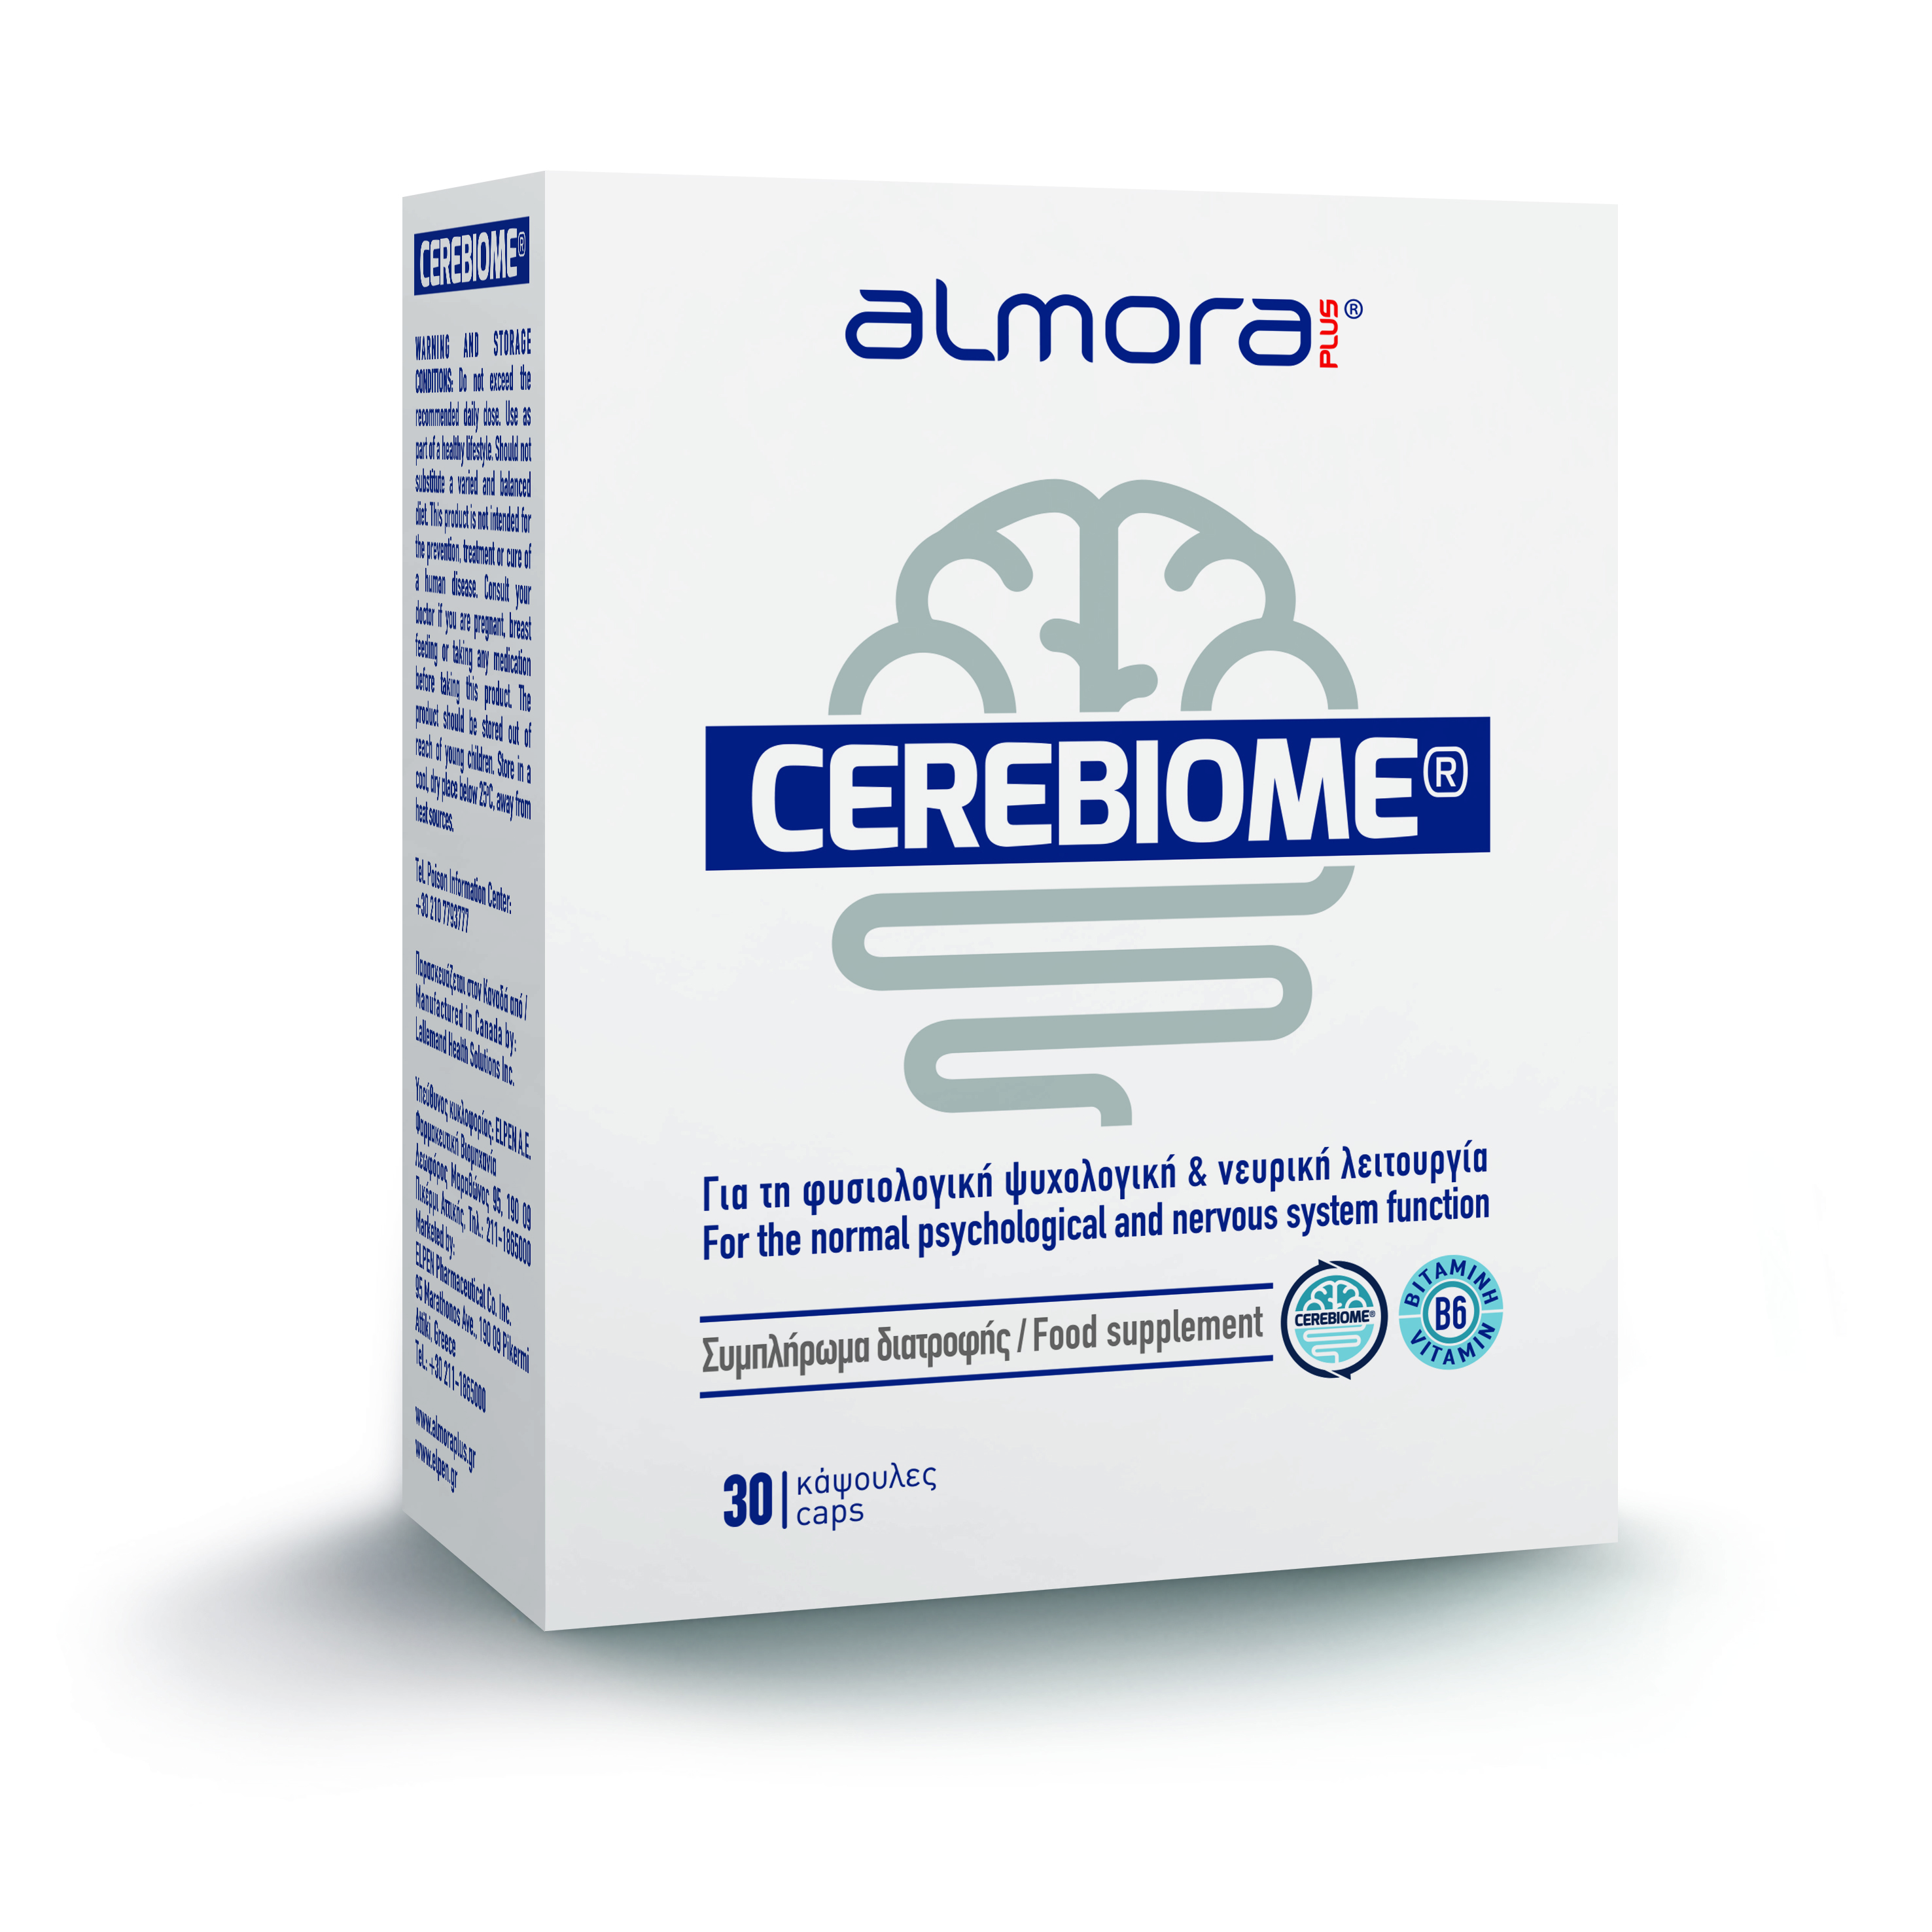 almora PLUS® CEREBIOME®: To νέο ψυχοβιοτικό για την υποστήριξη της φυσιολογικής ψυχολογικής και νευρικής λειτουργίας